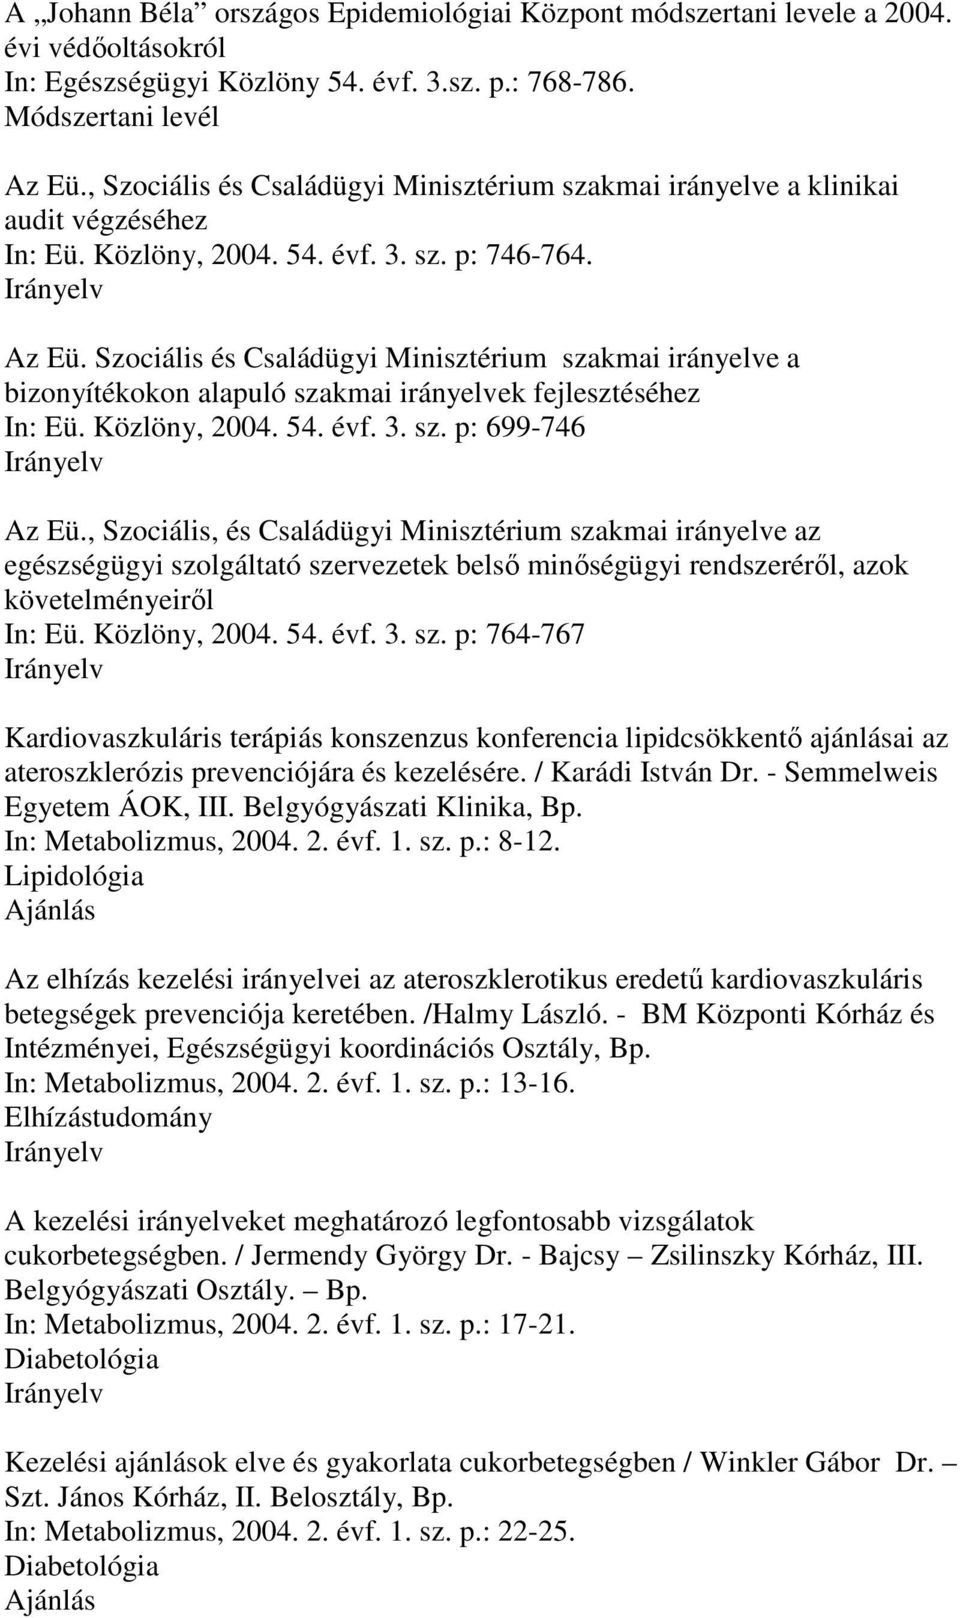 Szociális és Családügyi Minisztérium szakmai irányelve a bizonyítékokon alapuló szakmai irányelvek fejlesztéséhez In: Eü. Közlöny, 2004. 54. évf. 3. sz. p: 699-746 Az Eü.